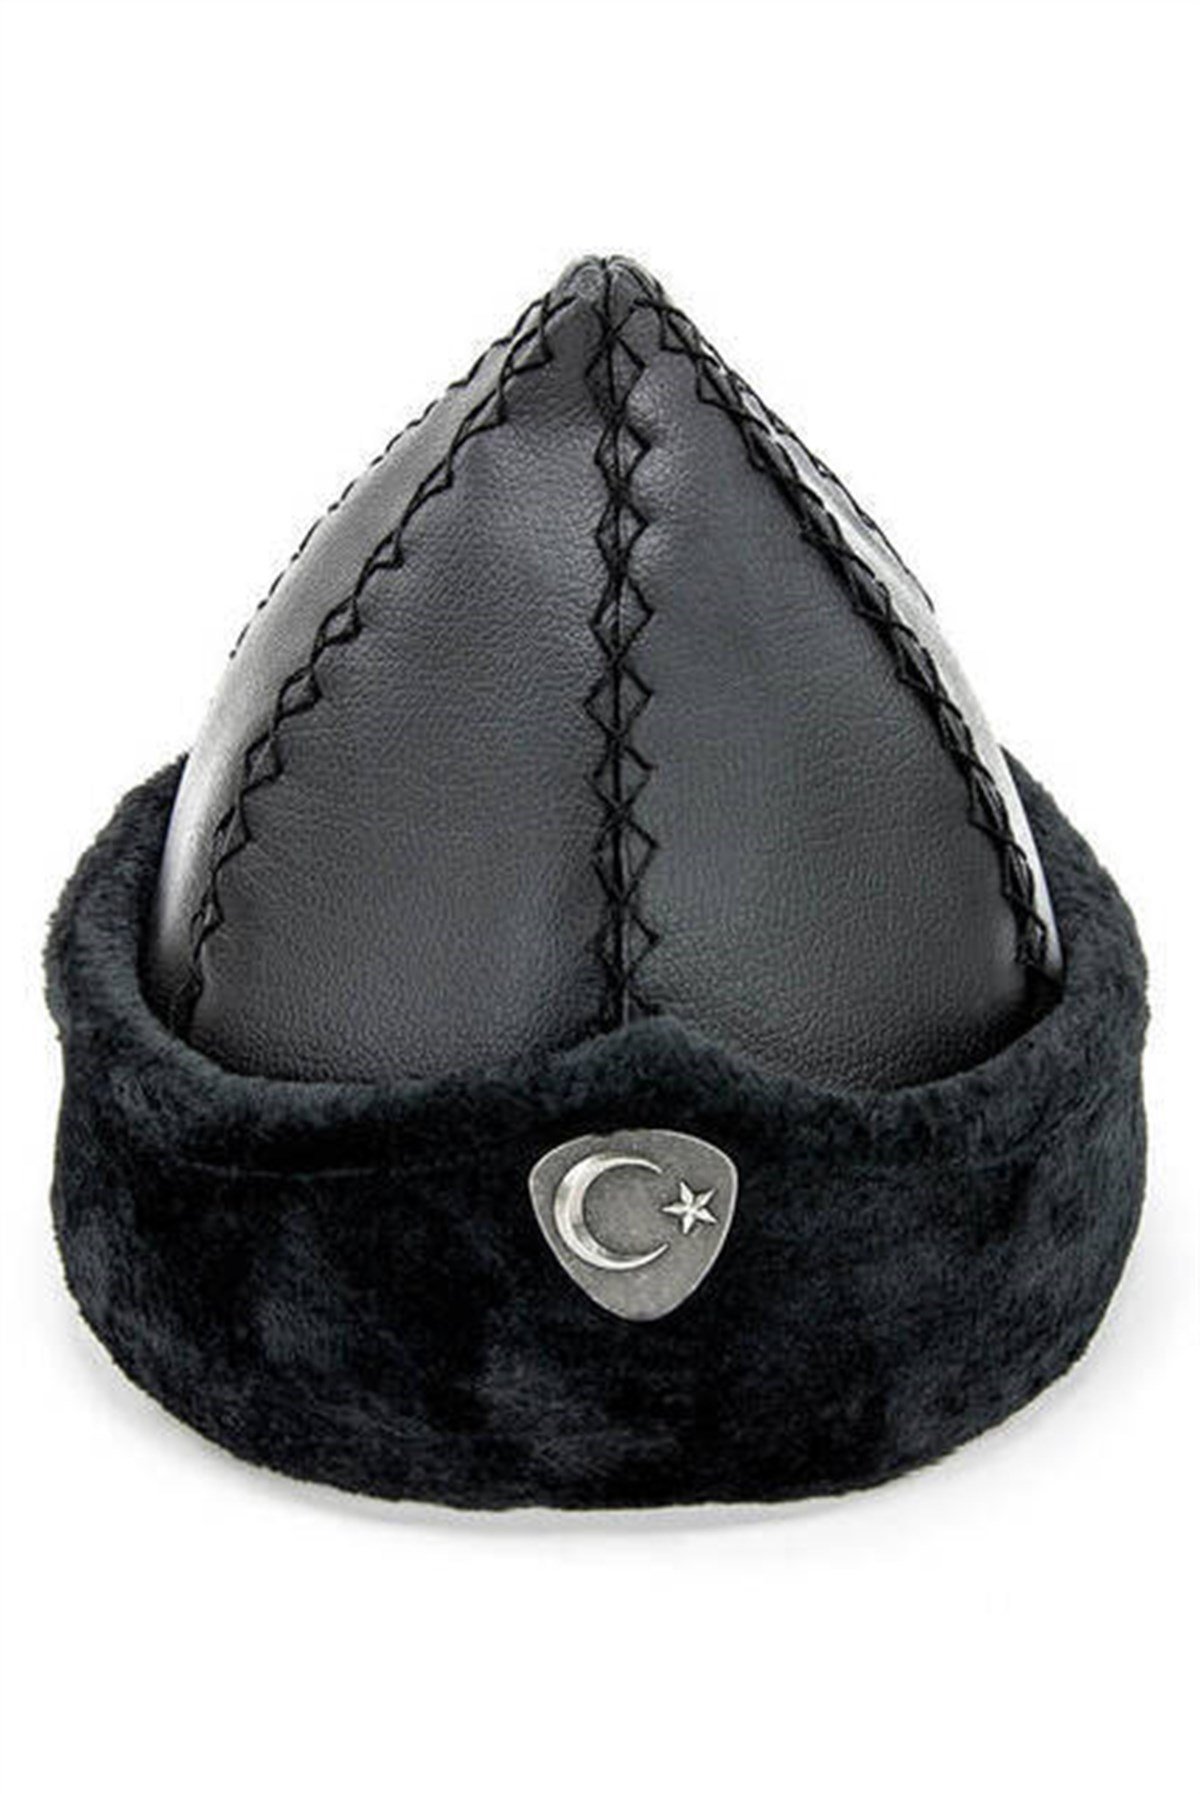 قبعة قيامة أرطغرل 2009 - أسود | Minber